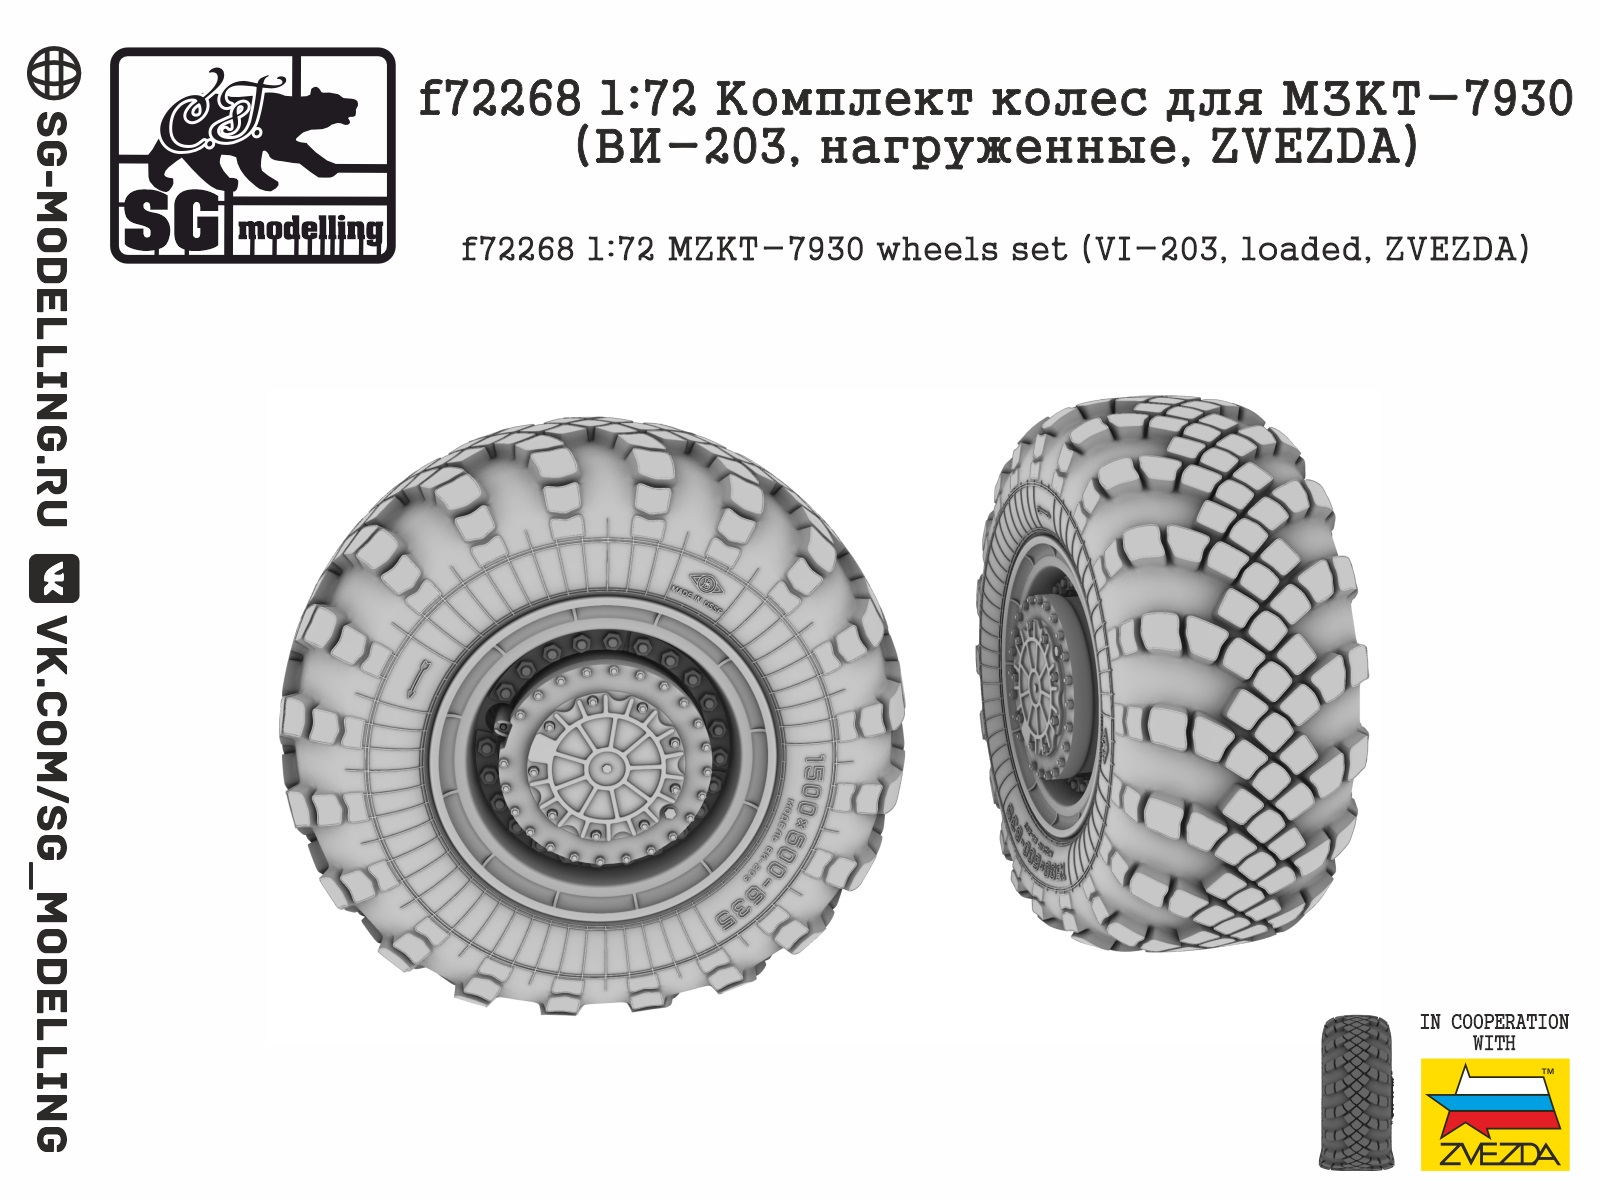 f72268  дополнения из смолы  Комплект колес для МЗКТ-7930 (ВИ-203, нагруженные, ZVEZDA)  (1:72)